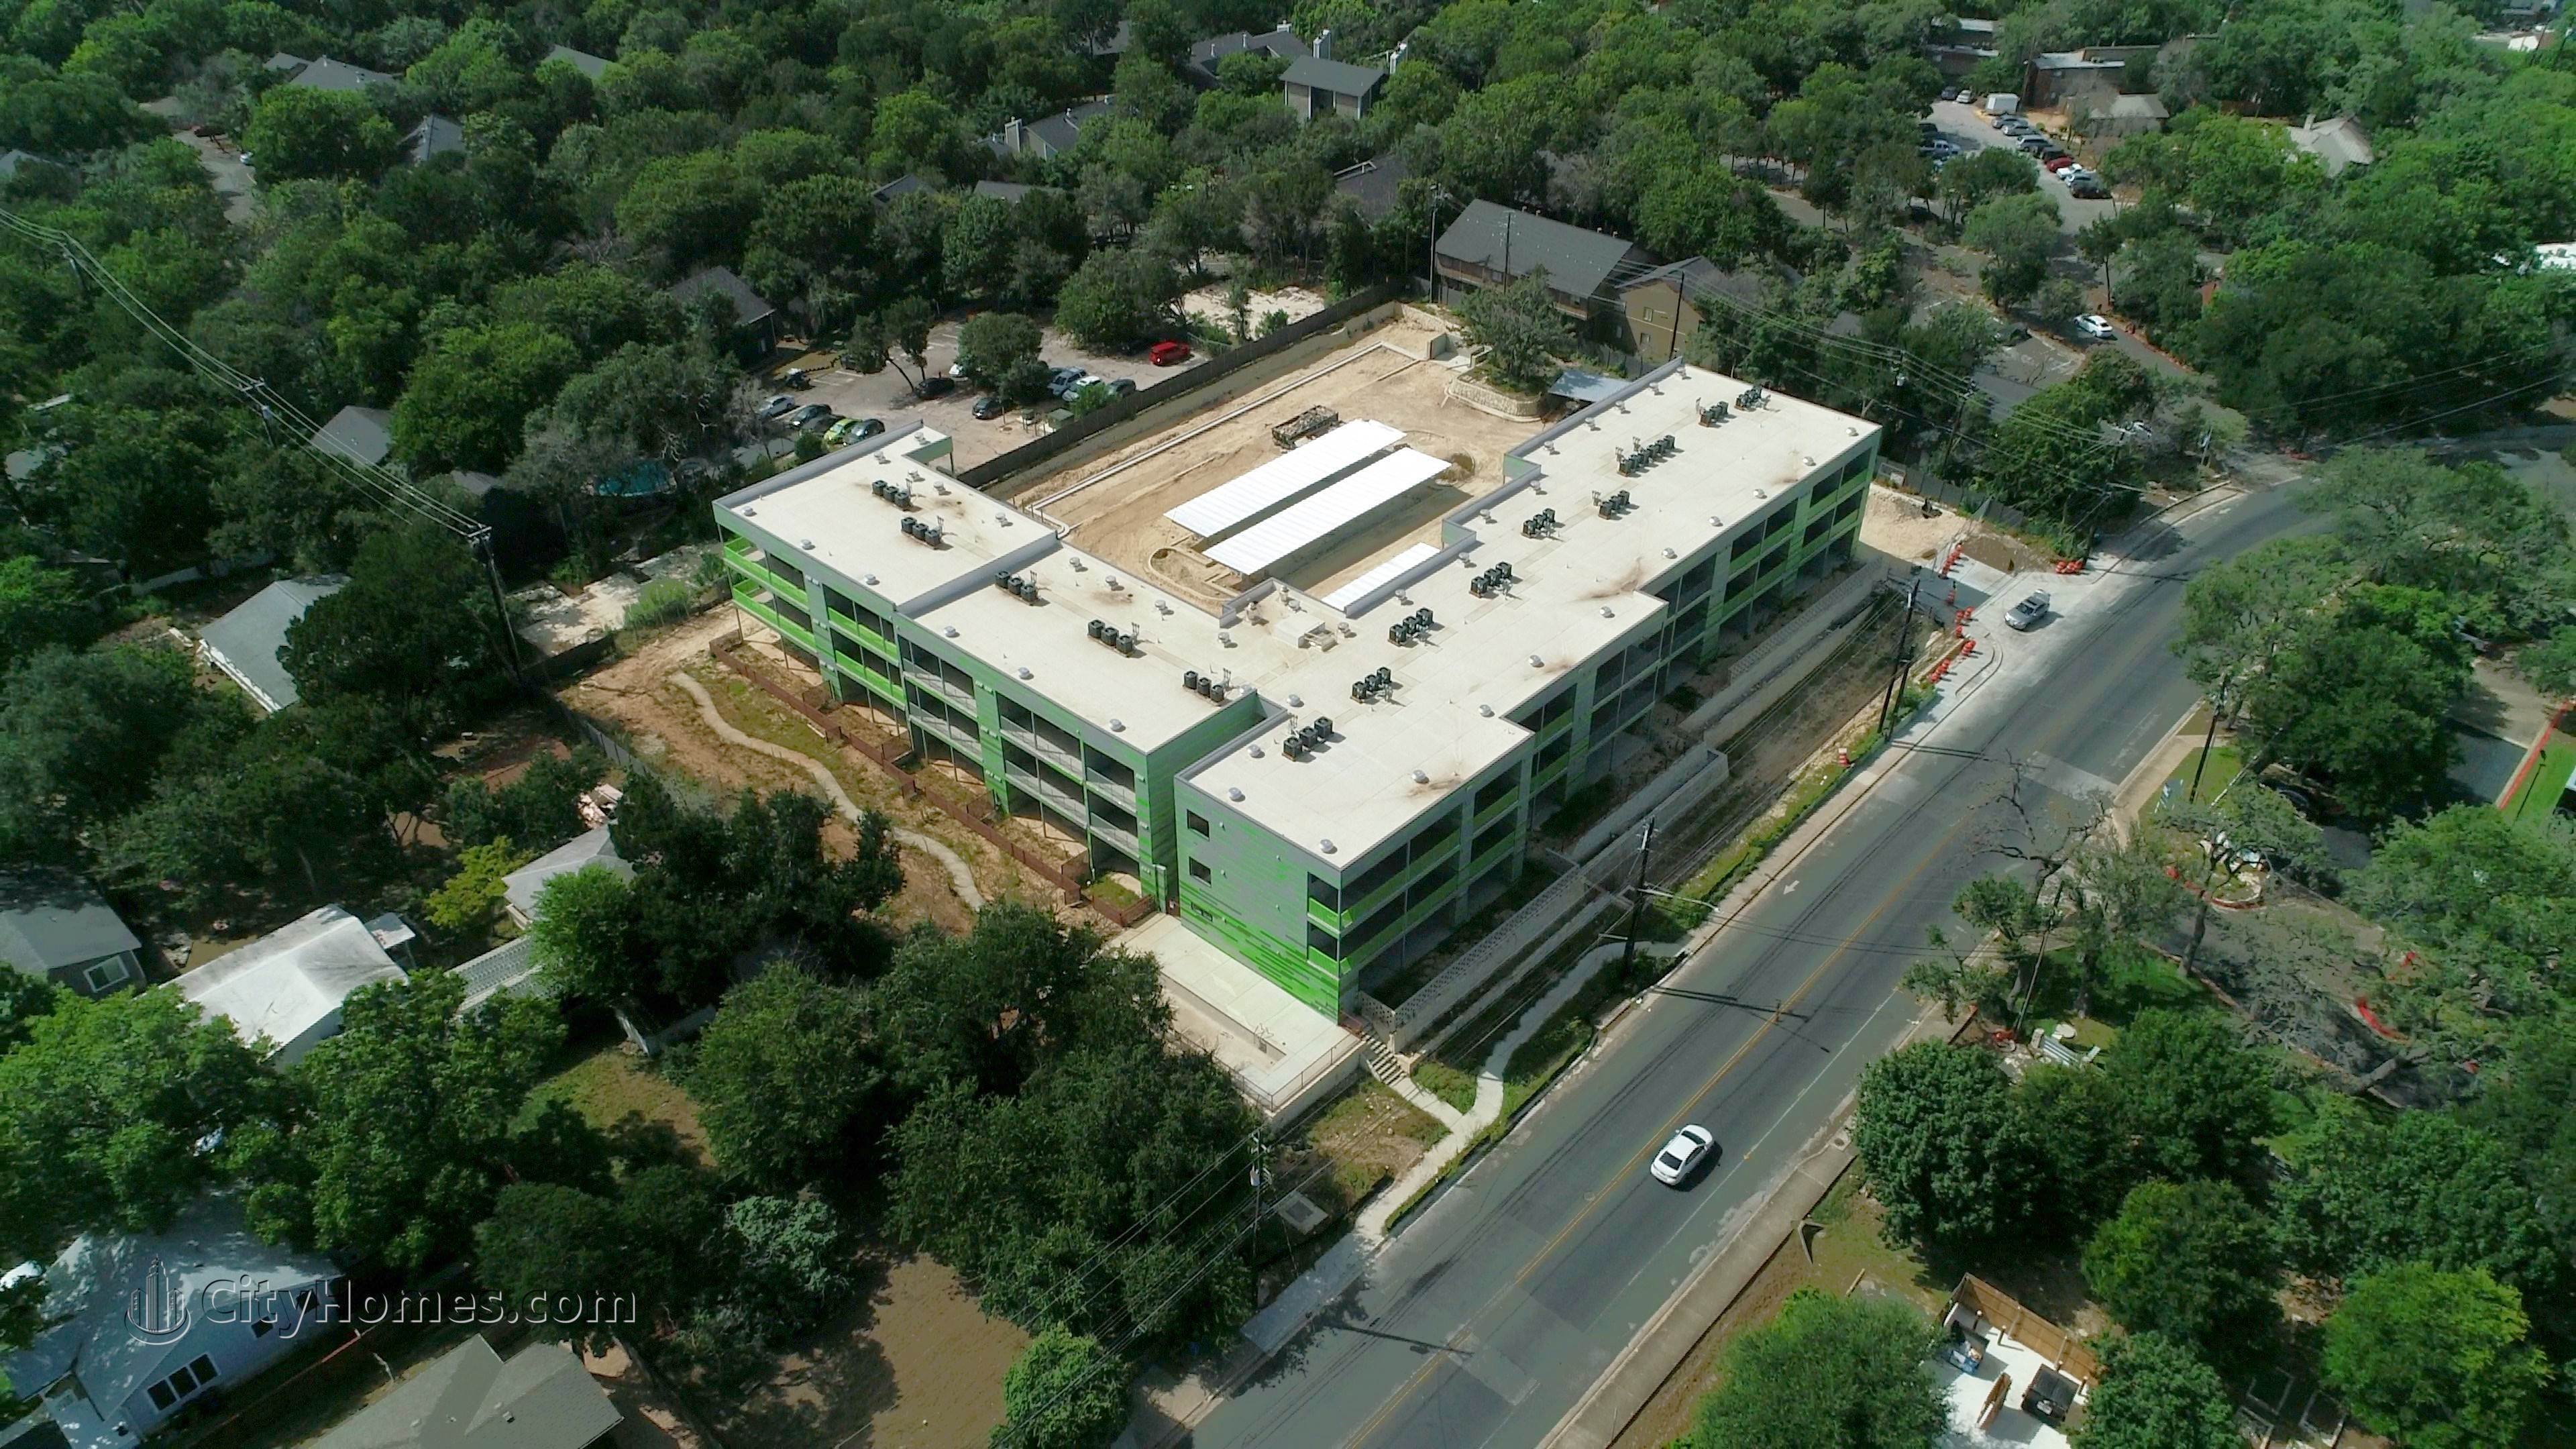 5. MESA building at South Lamar, Texas